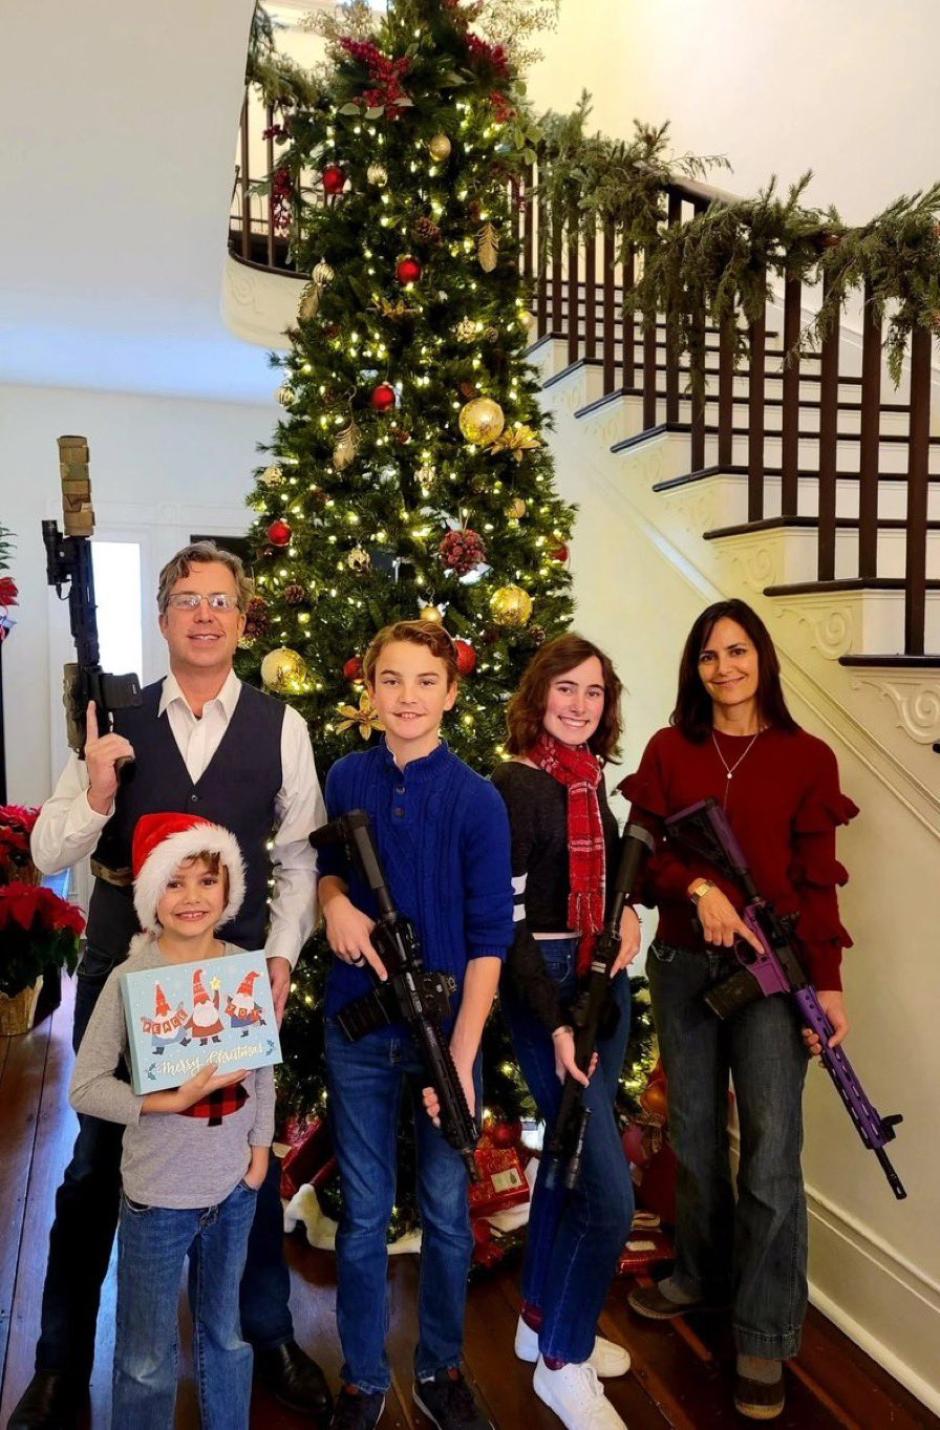 La felicitación de Navidad del congresista Ogles junto a su famila con rifles de asalto